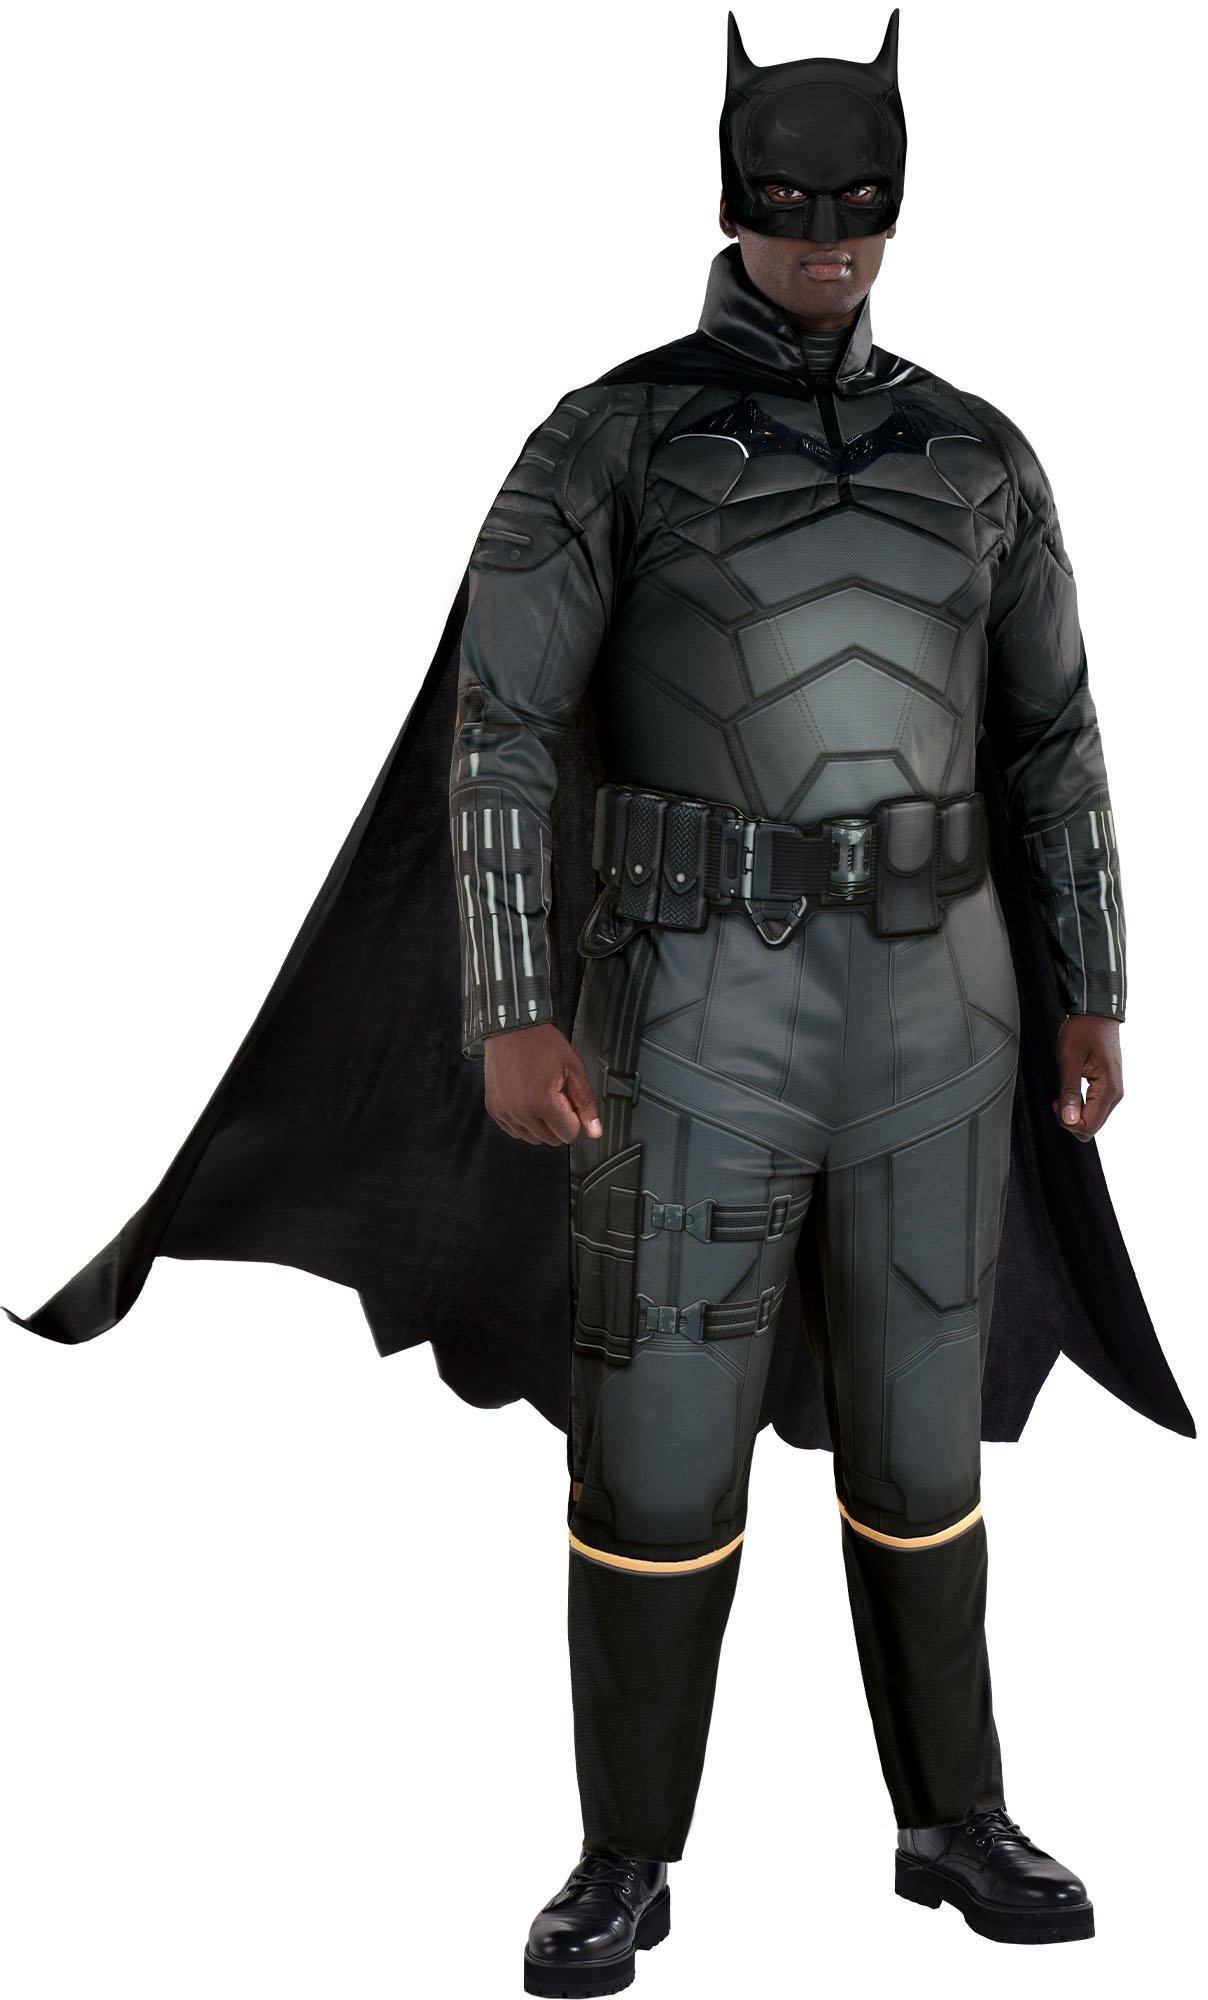 Adult Batman Plus Size Costume - The Batman